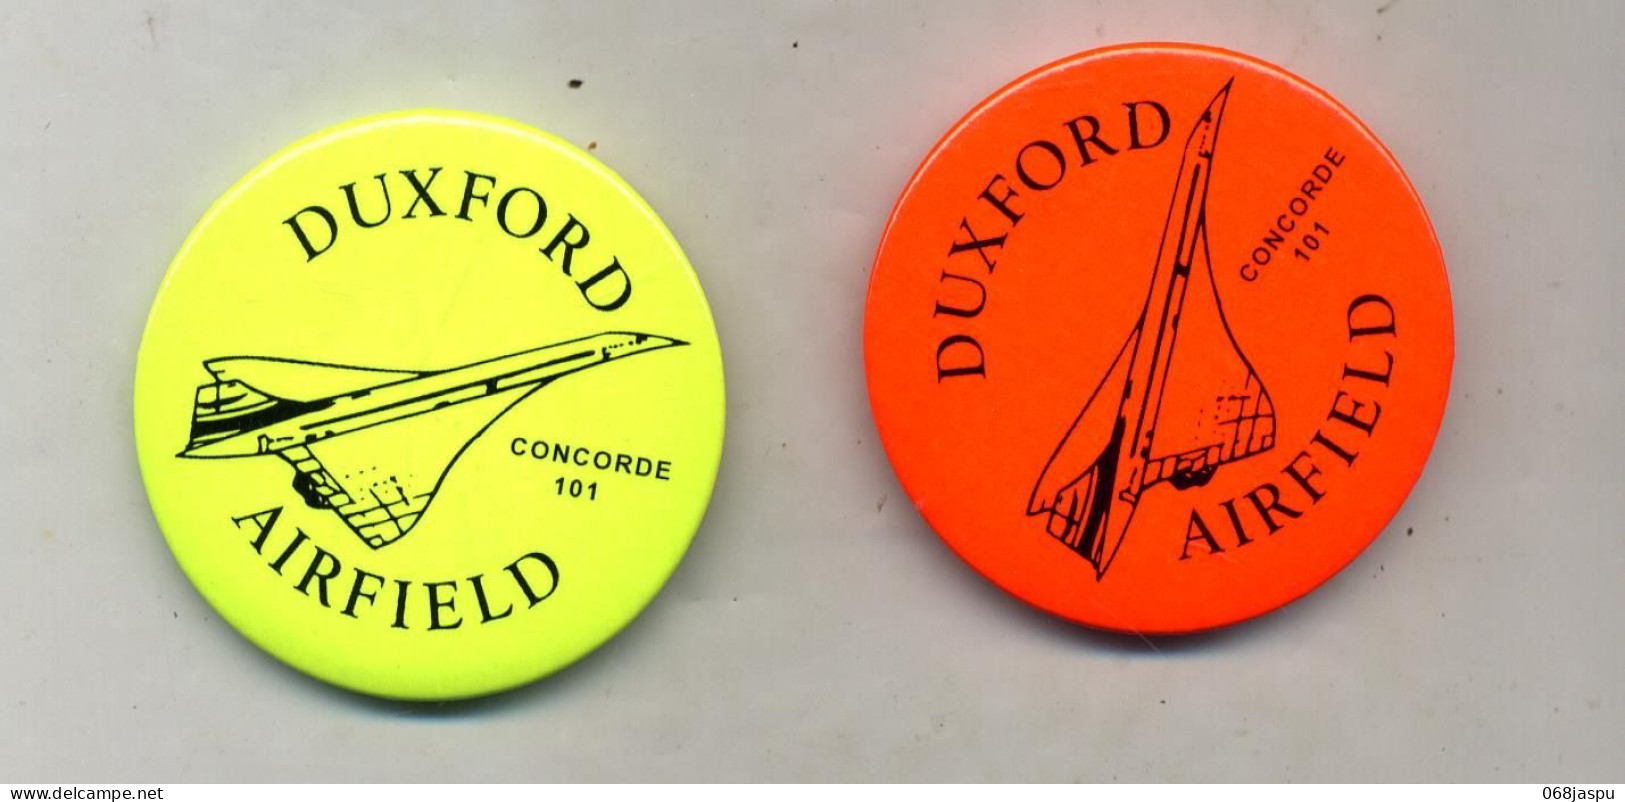 Broche Concorde Duxford Airfield - Broschen